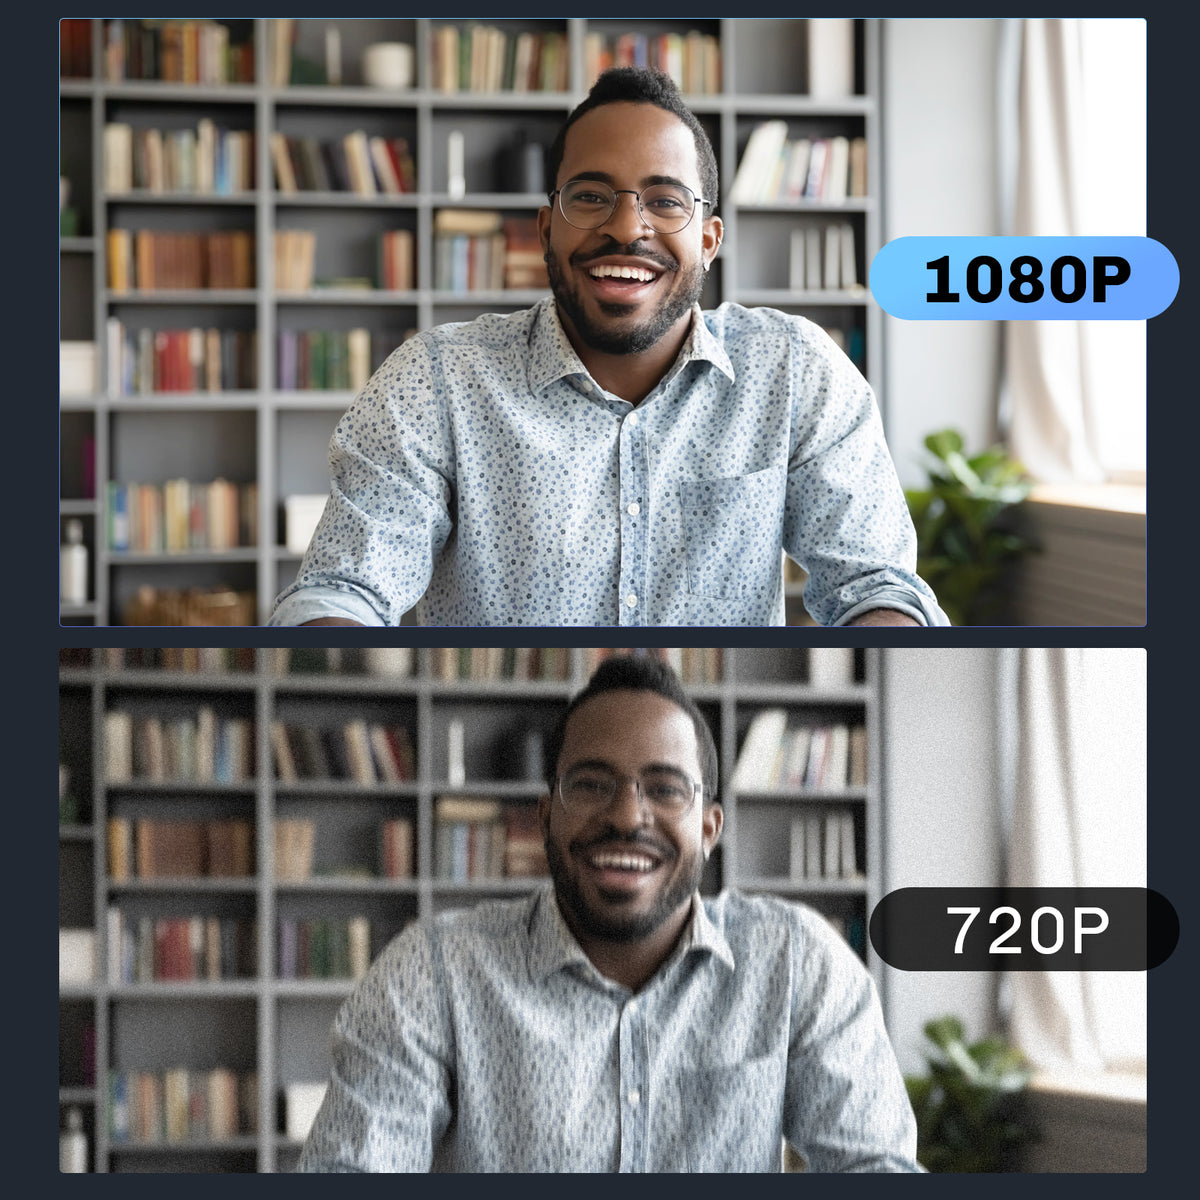 Compared to a 720p webcam, NexiGo 1080p webcam captures a man's face with greater clarity.